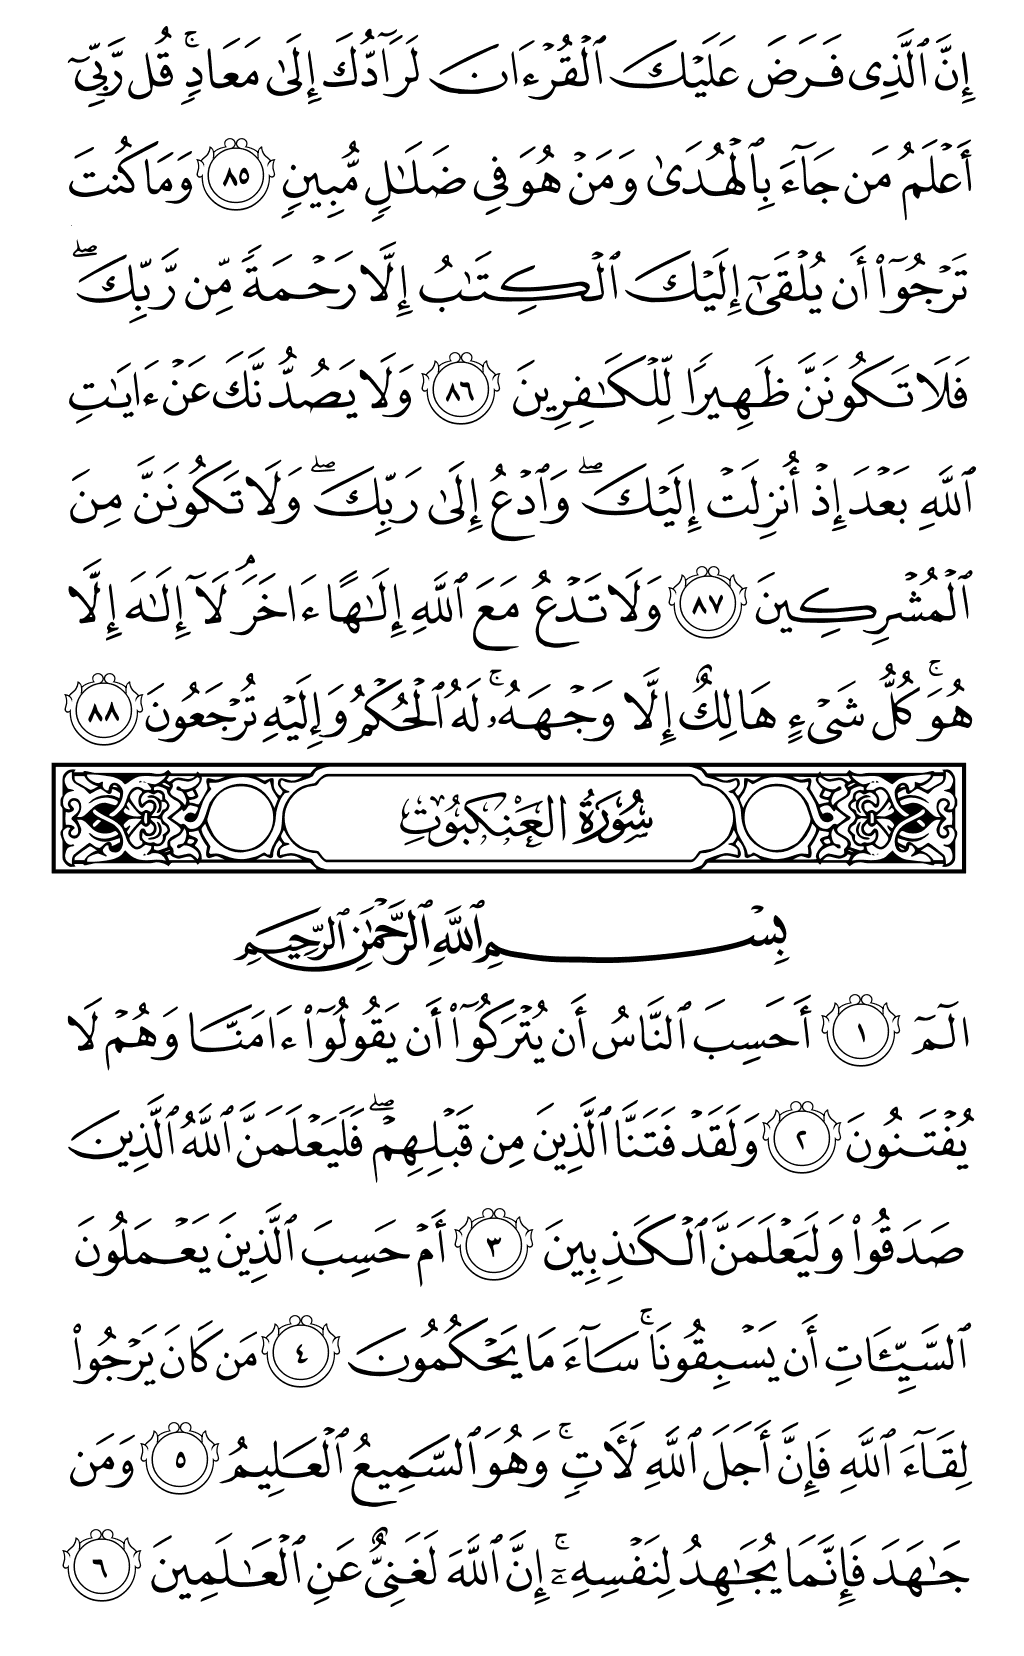 الصفحة رقم 396 من القرآن الكريم